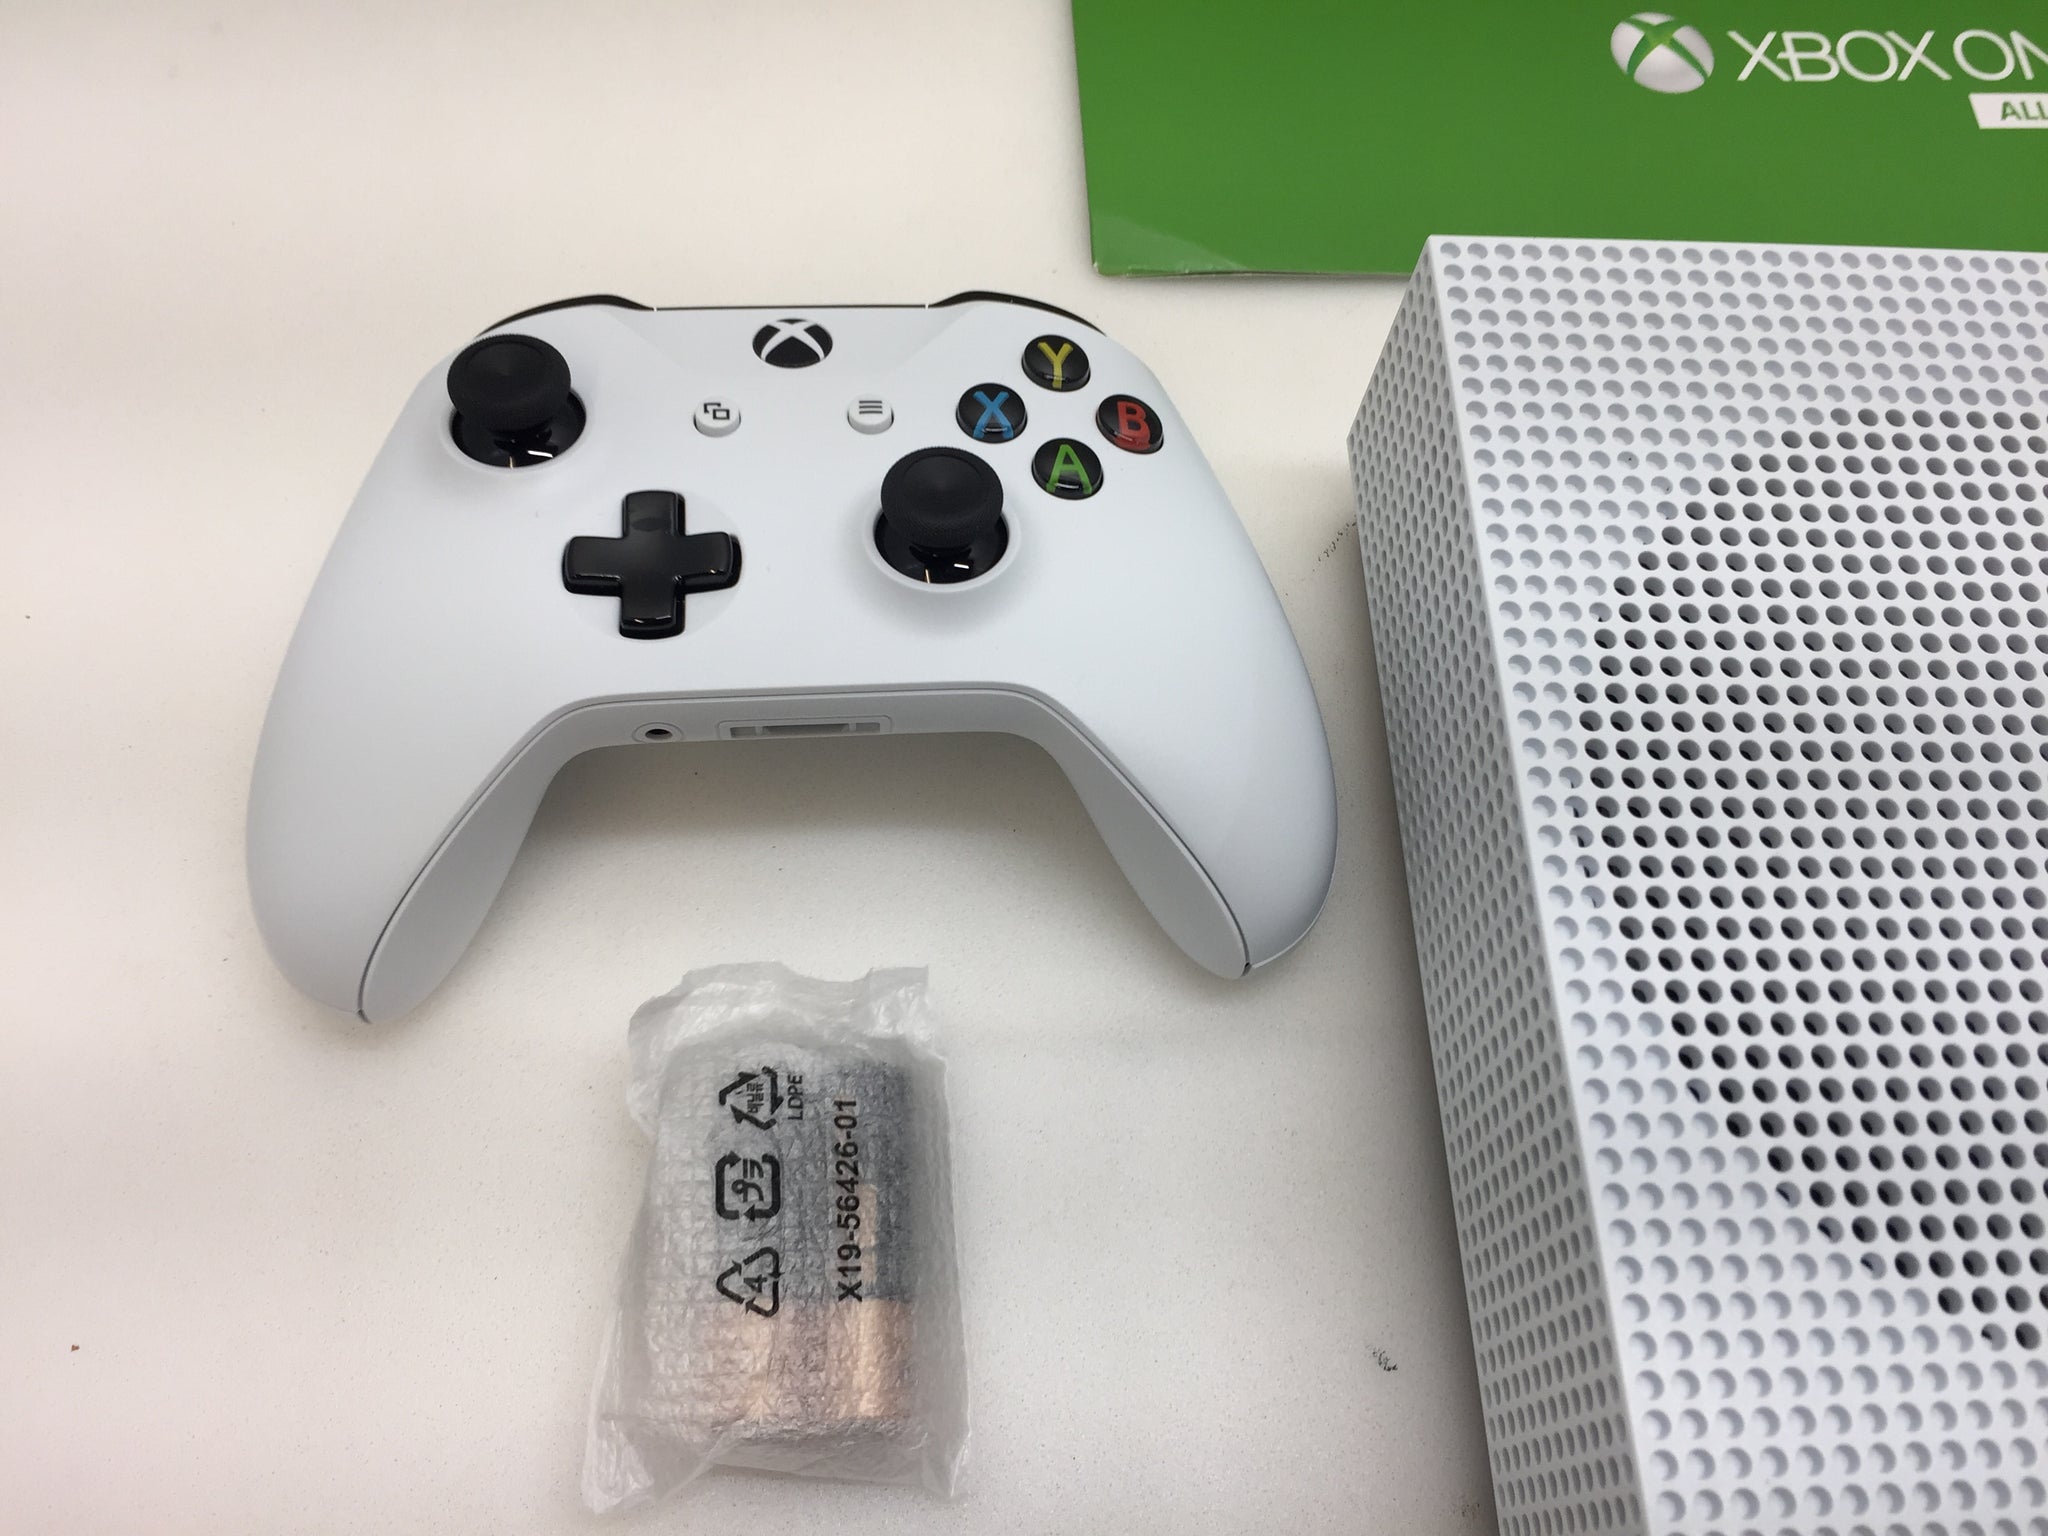 Microsoft Xbox One S Console White 1TB